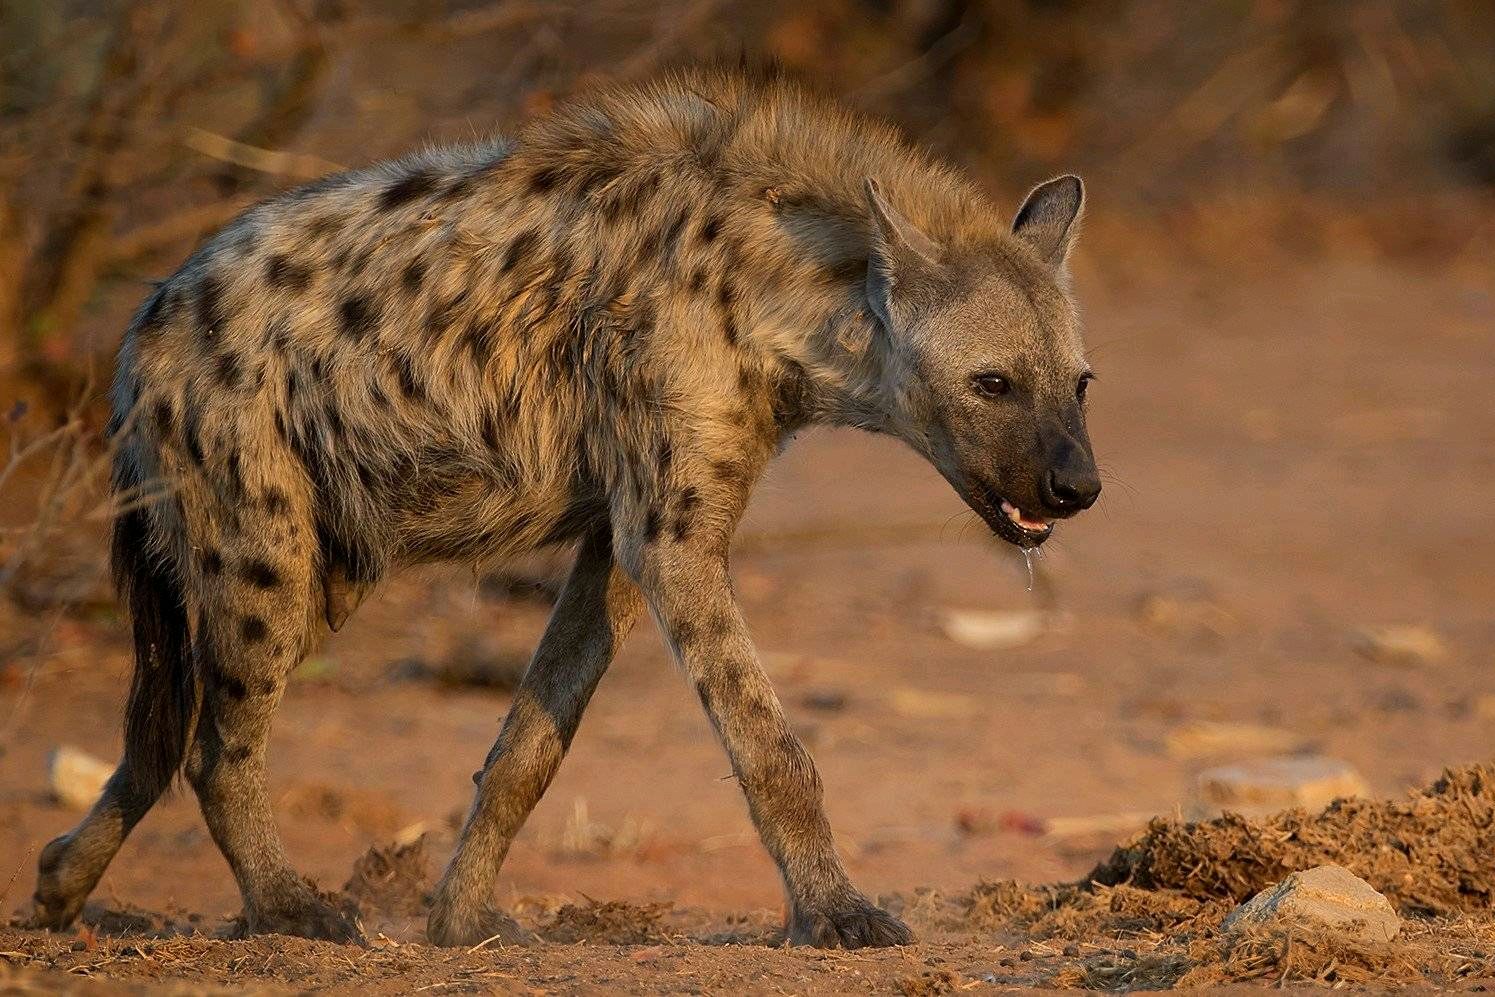 号称非洲二哥的斑鬣狗到底有多猛?为什么连狮子都怕它?